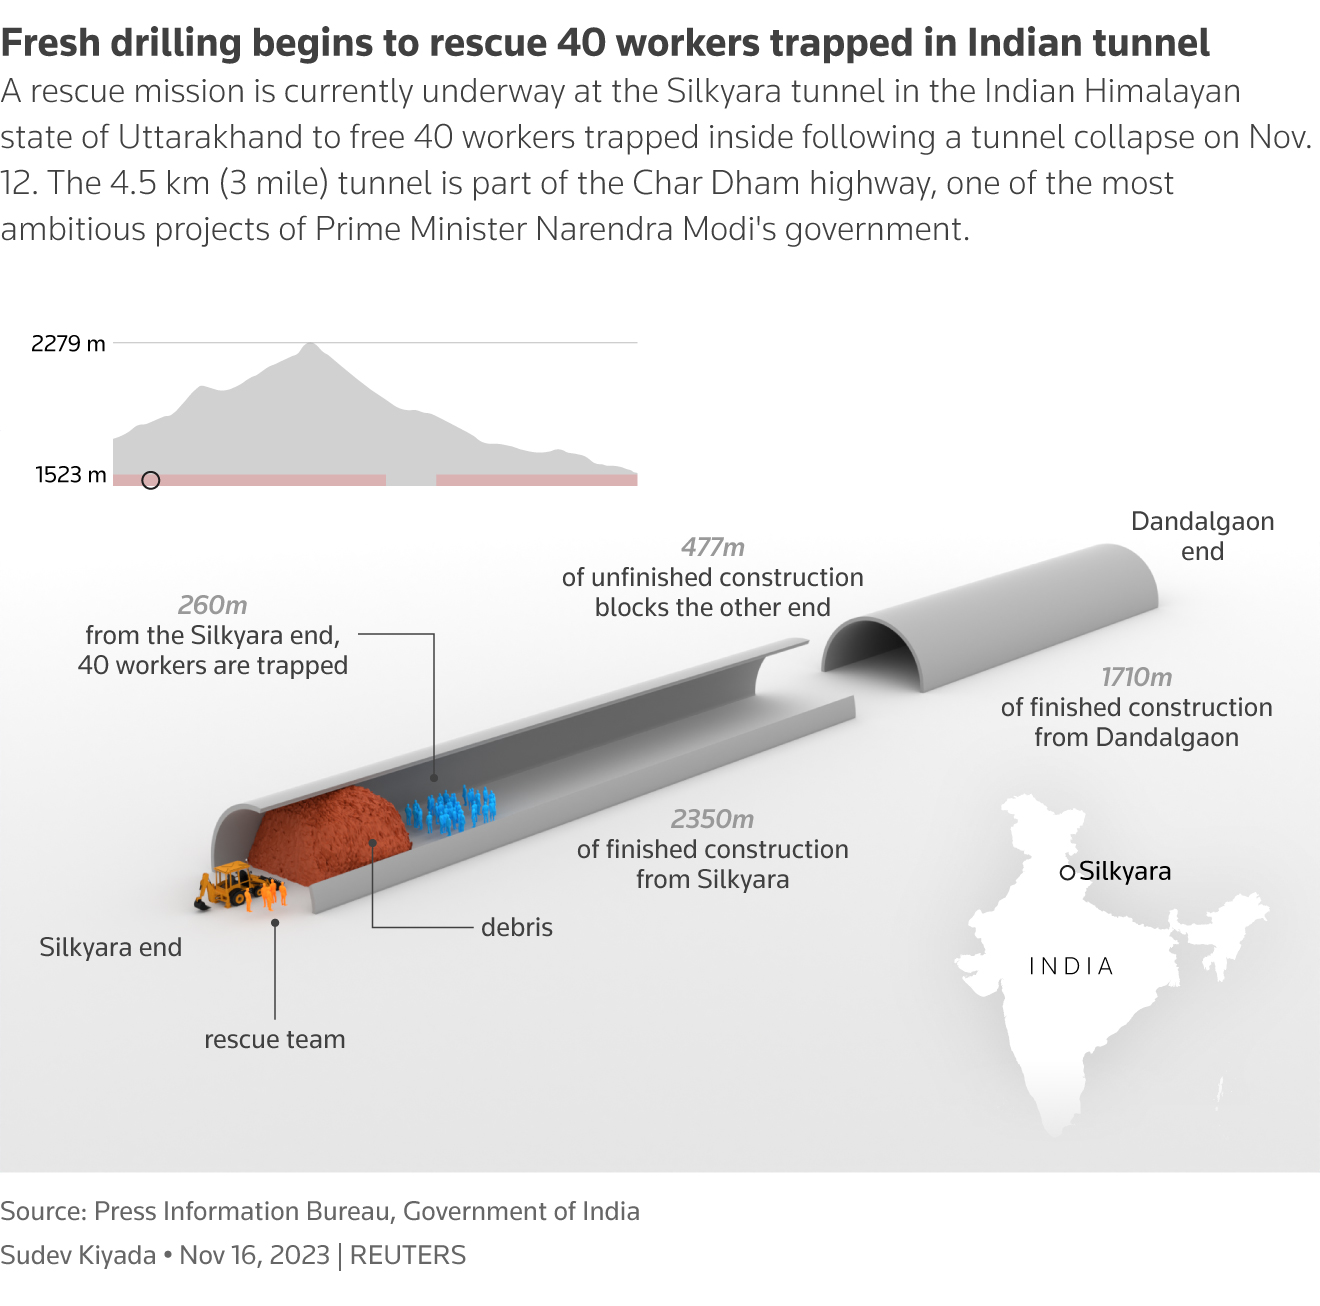 Derzeit läuft eine Rettungsmission im Silkyara-Tunnel in Uttarakhand, um 40 Arbeiter zu befreien, die nach einem Erdrutsch darin festsitzen.